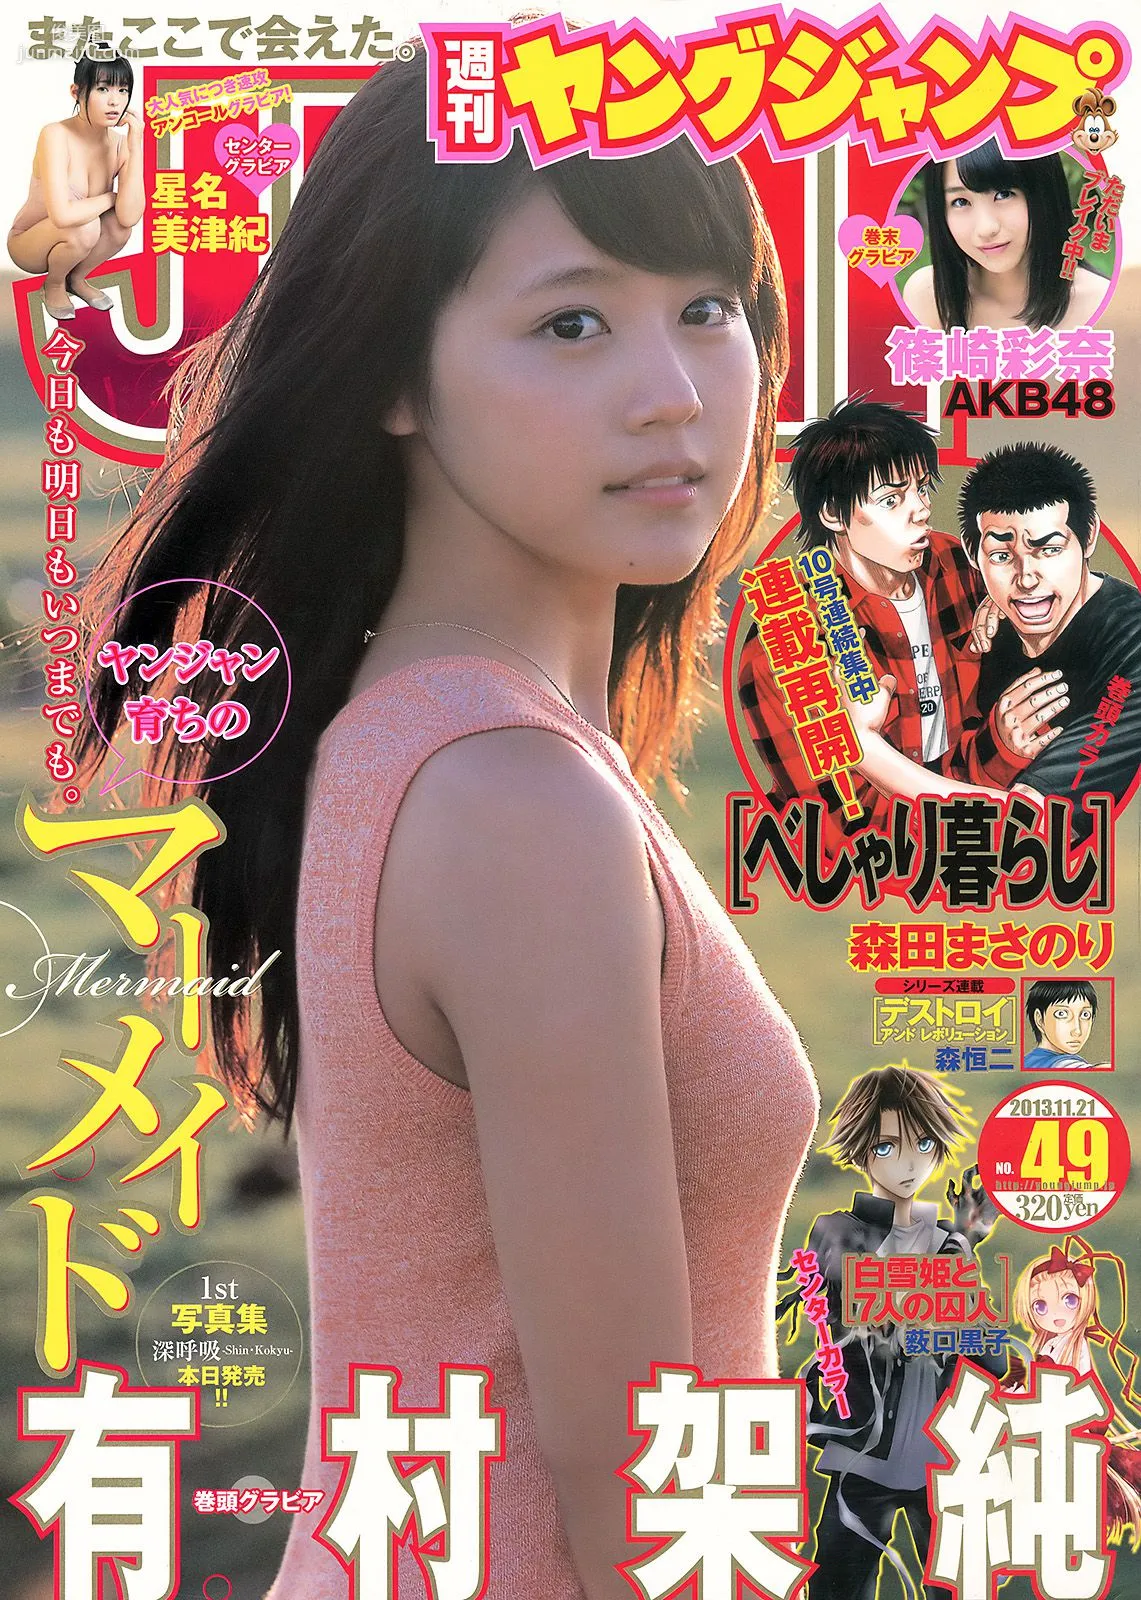 有村架純 星名美津紀 篠崎彩奈 [Weekly Young Jump] 2013年No.49 写真杂志1